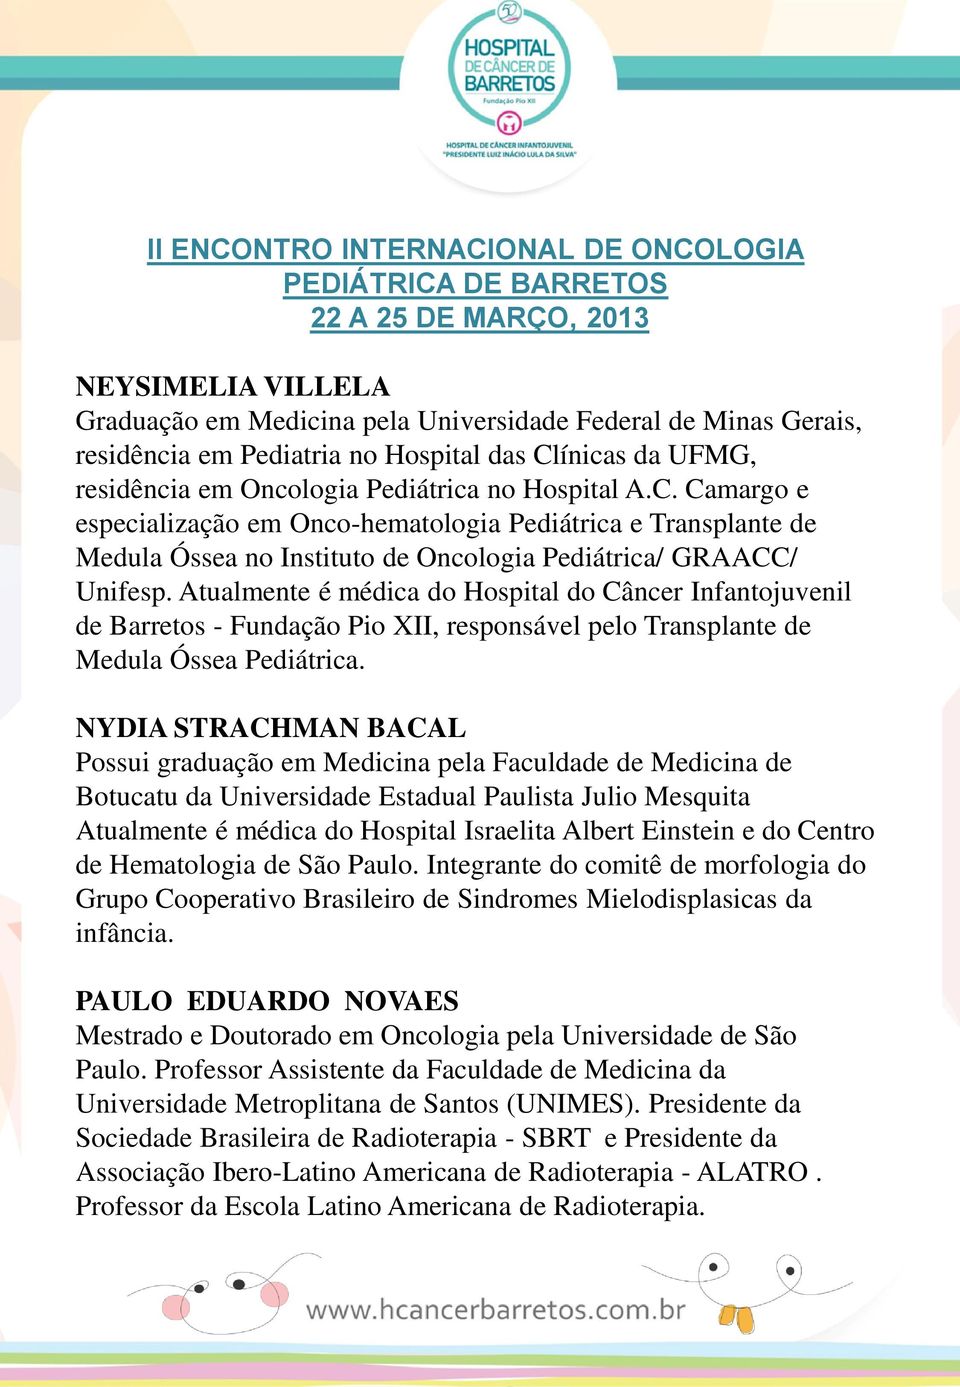 Camargo e especialização em Onco-hematologia Pediátrica e Transplante de Medula Óssea no Instituto de Oncologia Pediátrica/ GRAACC/ Unifesp.